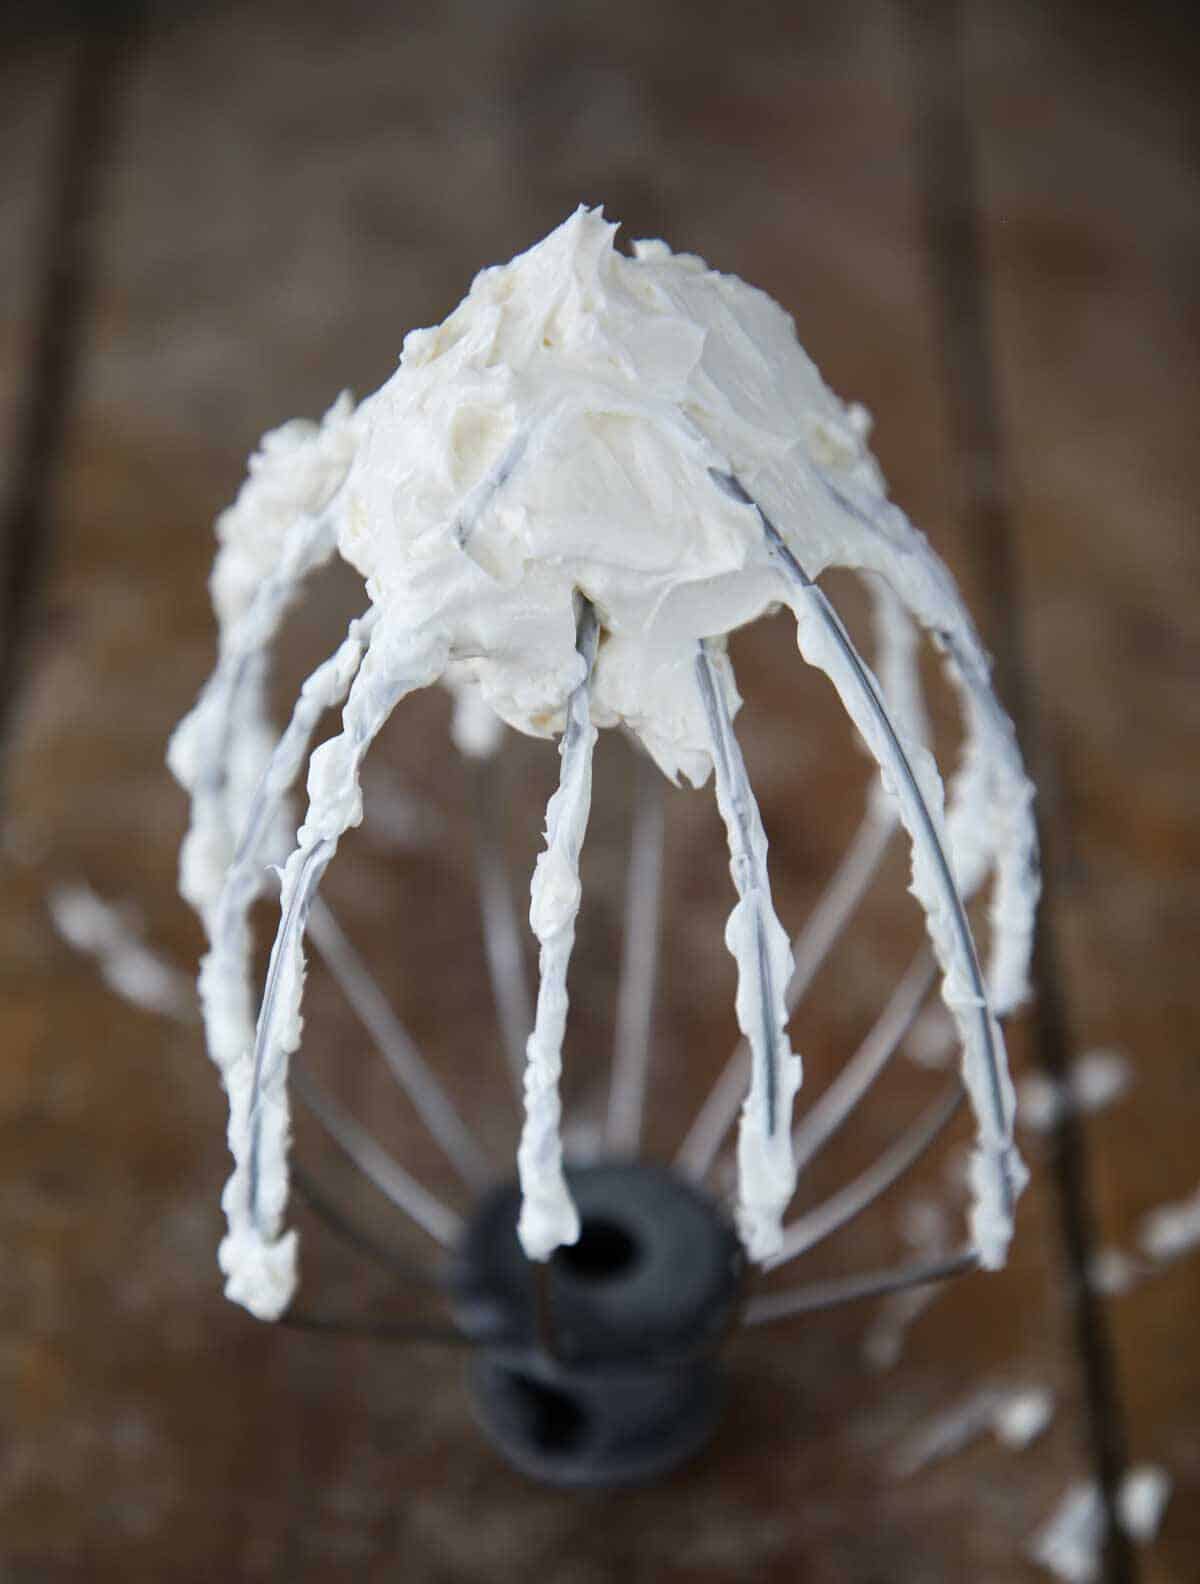 Swiss meringue buttercream on whisk.